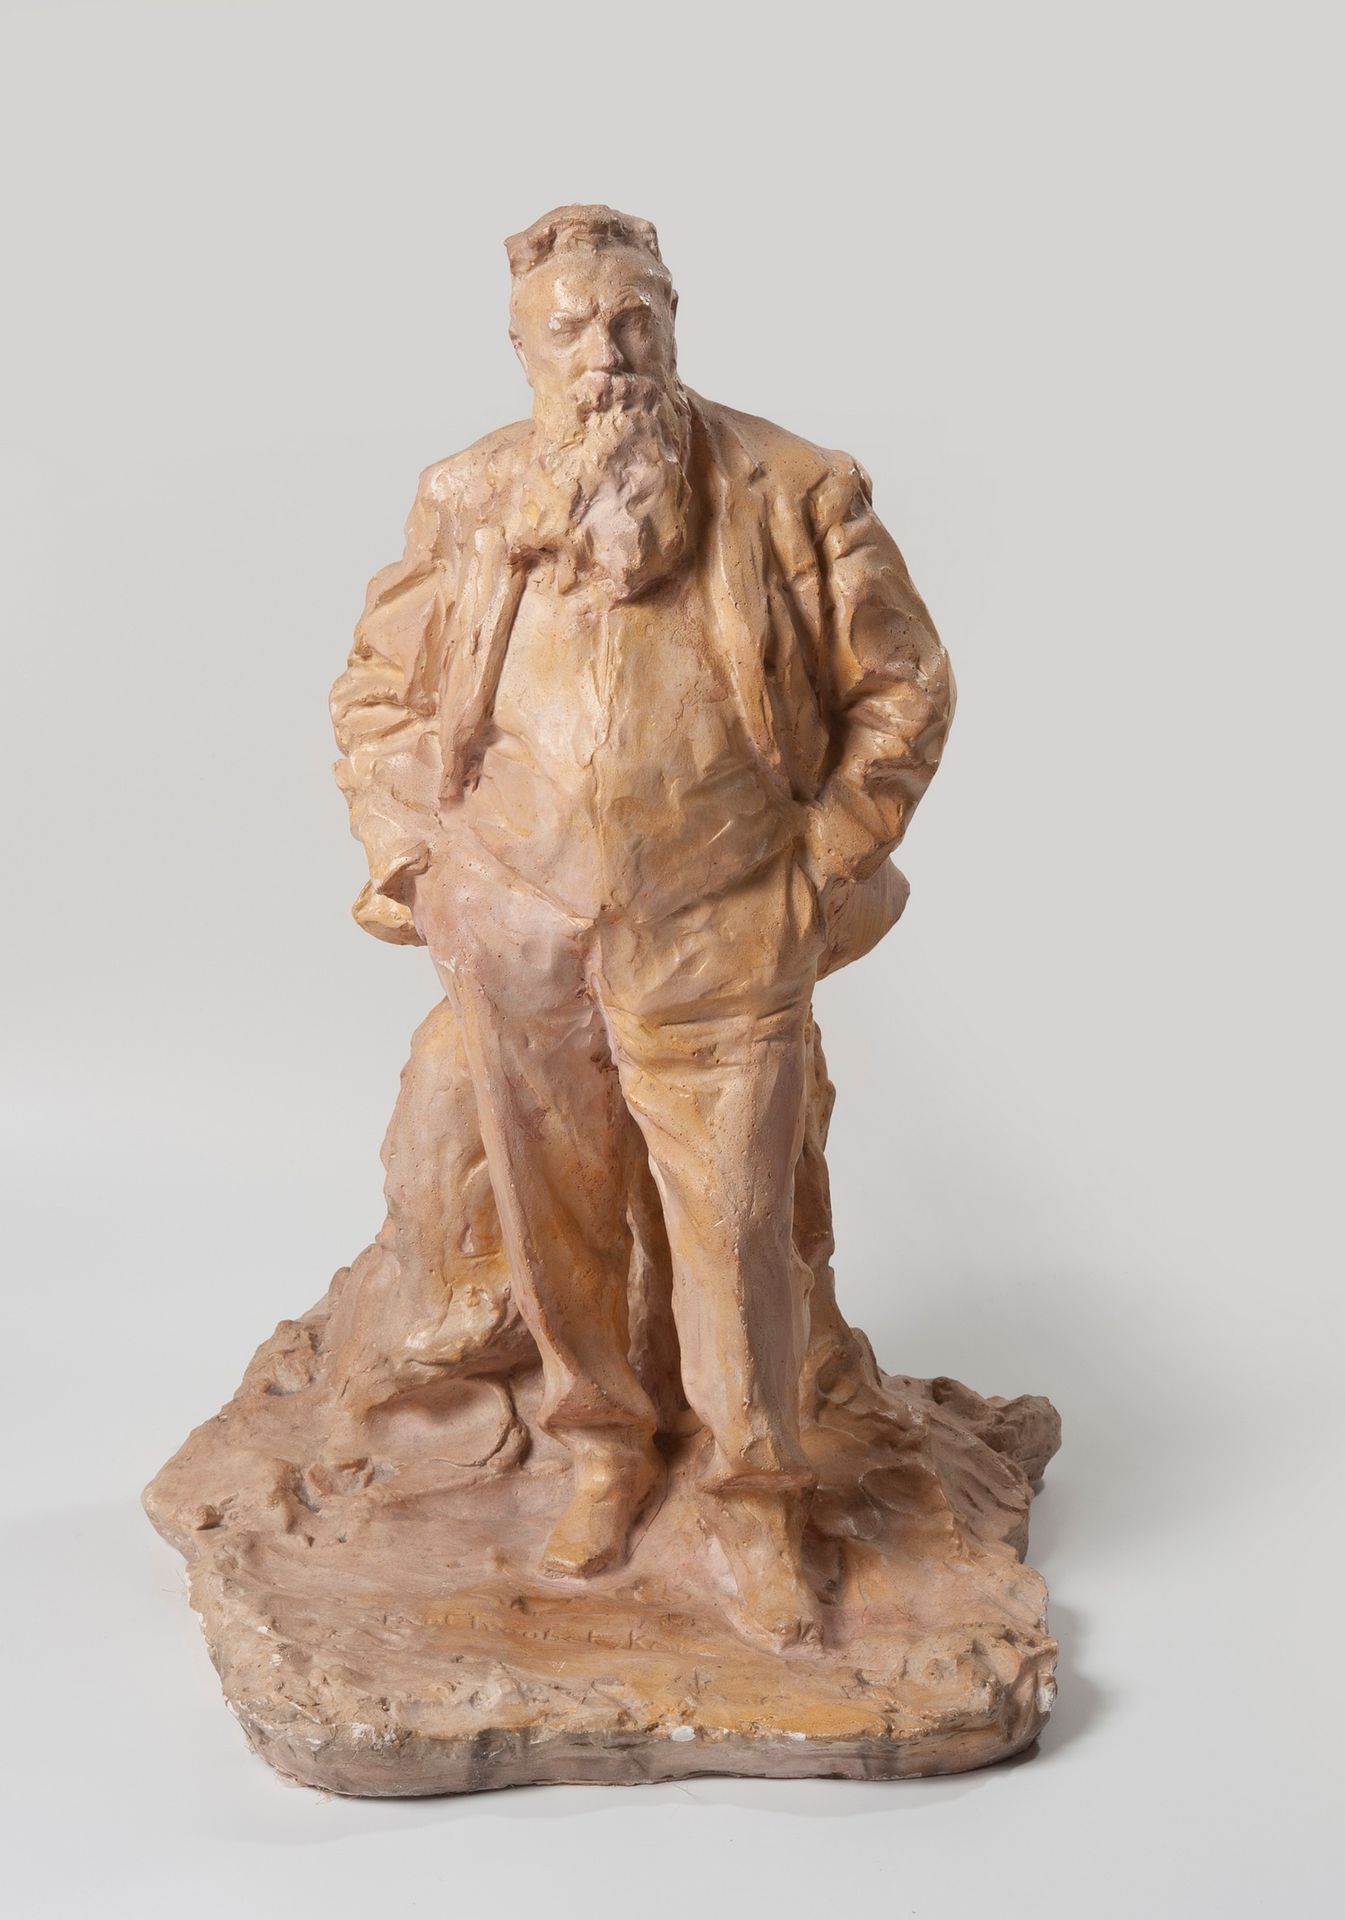 Null Principe Paul TROUBETZKOY ( 1866 -1938 Russia-Italia) dopo

Auguste Rodin

&hellip;